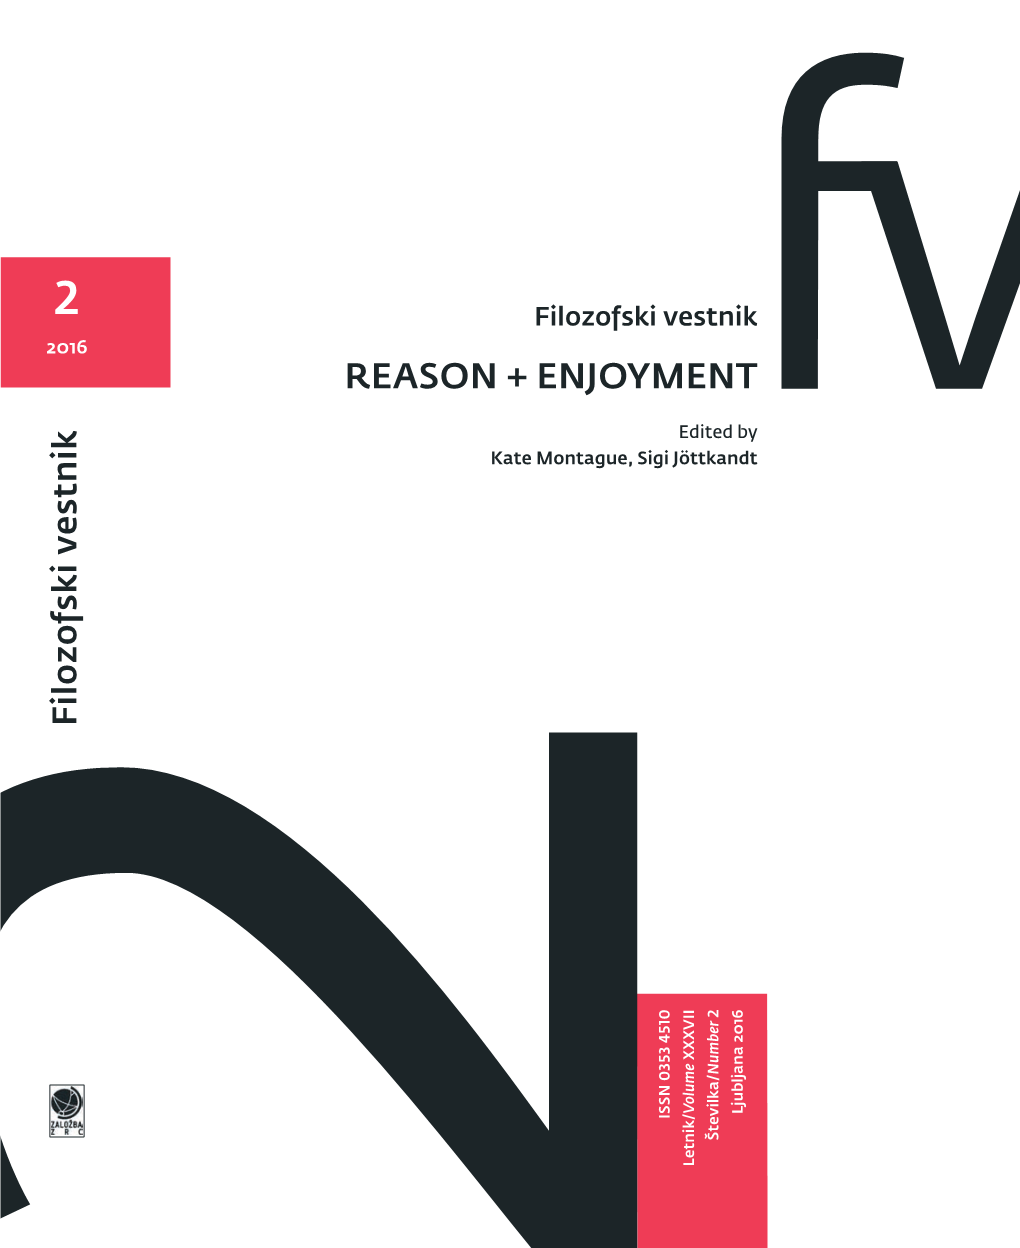 Reason + Enjoyment Reason + Enjoyment Ernesto Laclau † (Essex), Steven Lukes (New York), Chantal Mouffe (London), Zgodovine Filozofije in Teoretske Psihoanalize